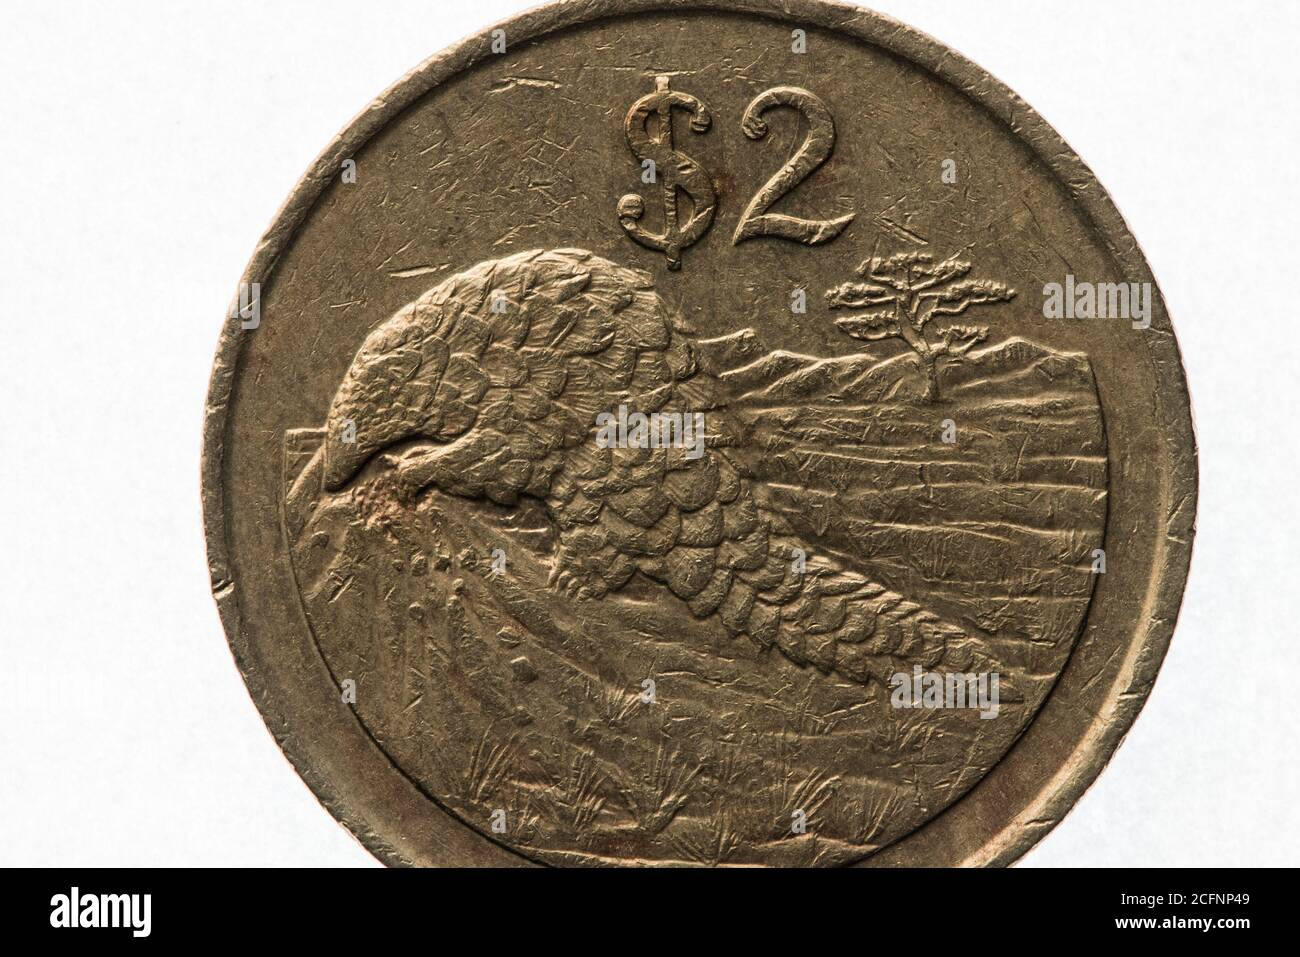 Un pangolino africano, un animale in pericolo, sulla moneta da 2 dollari dello Zimbabwe. Foto Stock